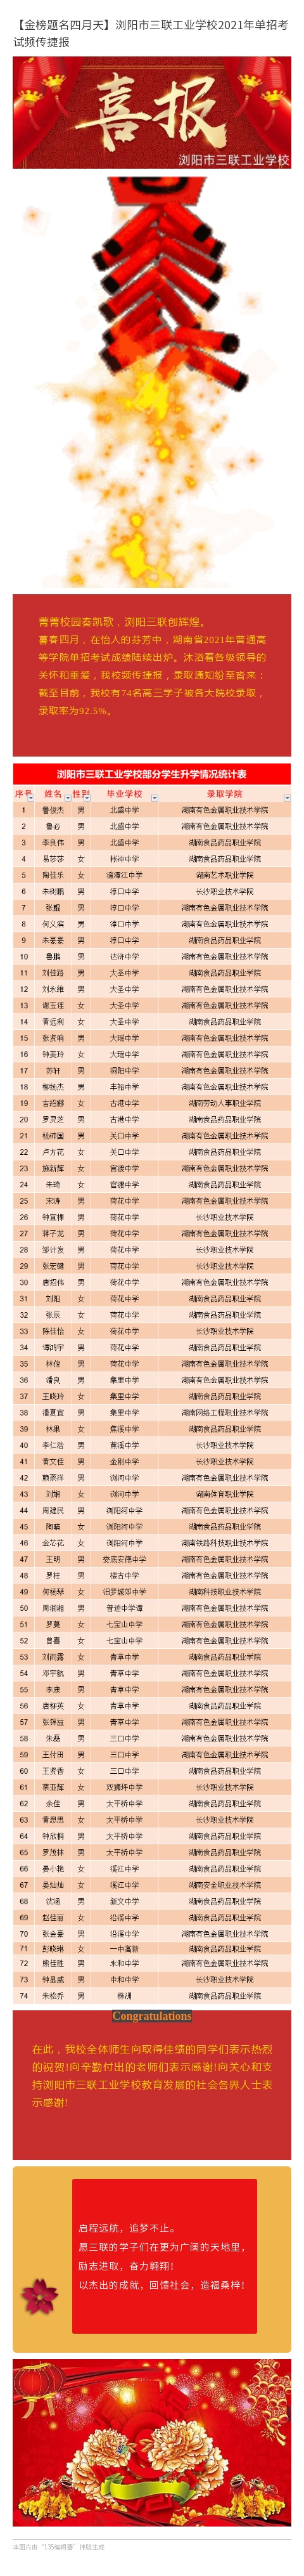 【金榜题名四月天】浏阳市三联工业学校2021年单招考试频传捷报